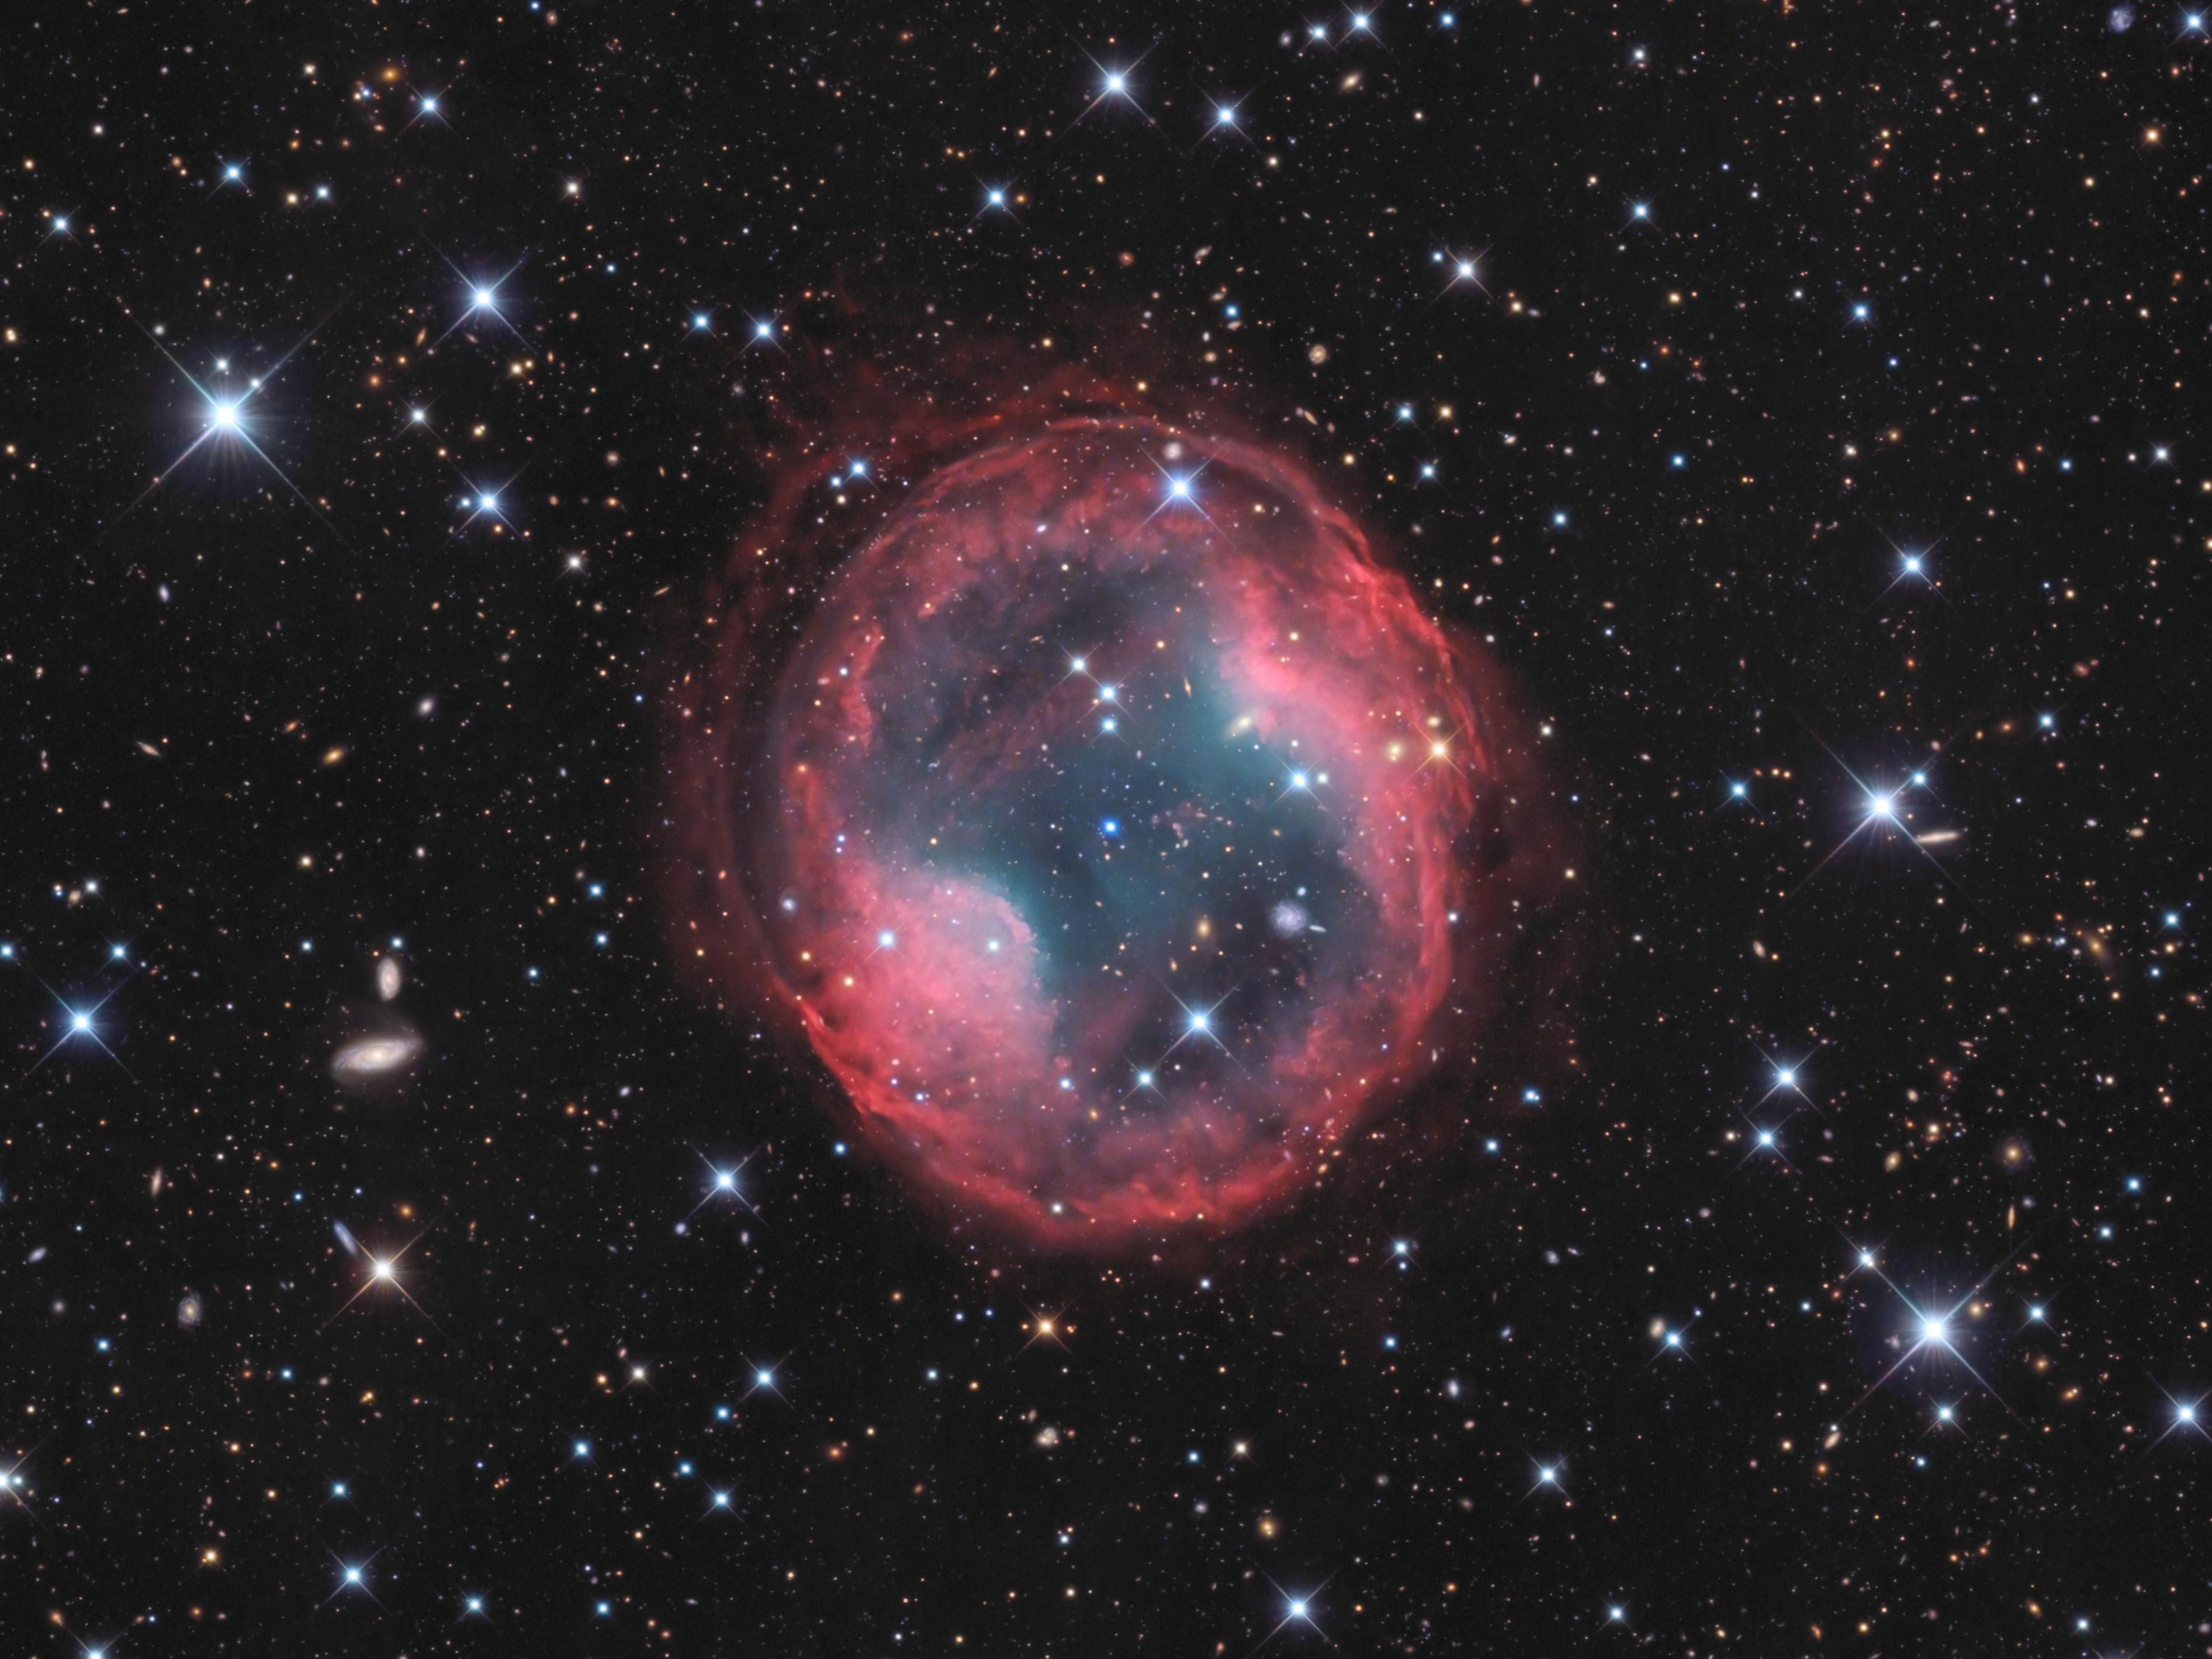 سديم كوكبي يبدو كفقاعة محمرّة تحيط بنجم مركزي مزرق بينما تمتدّ عبر الصورة نجوم بعضها يظهر مدبّباً